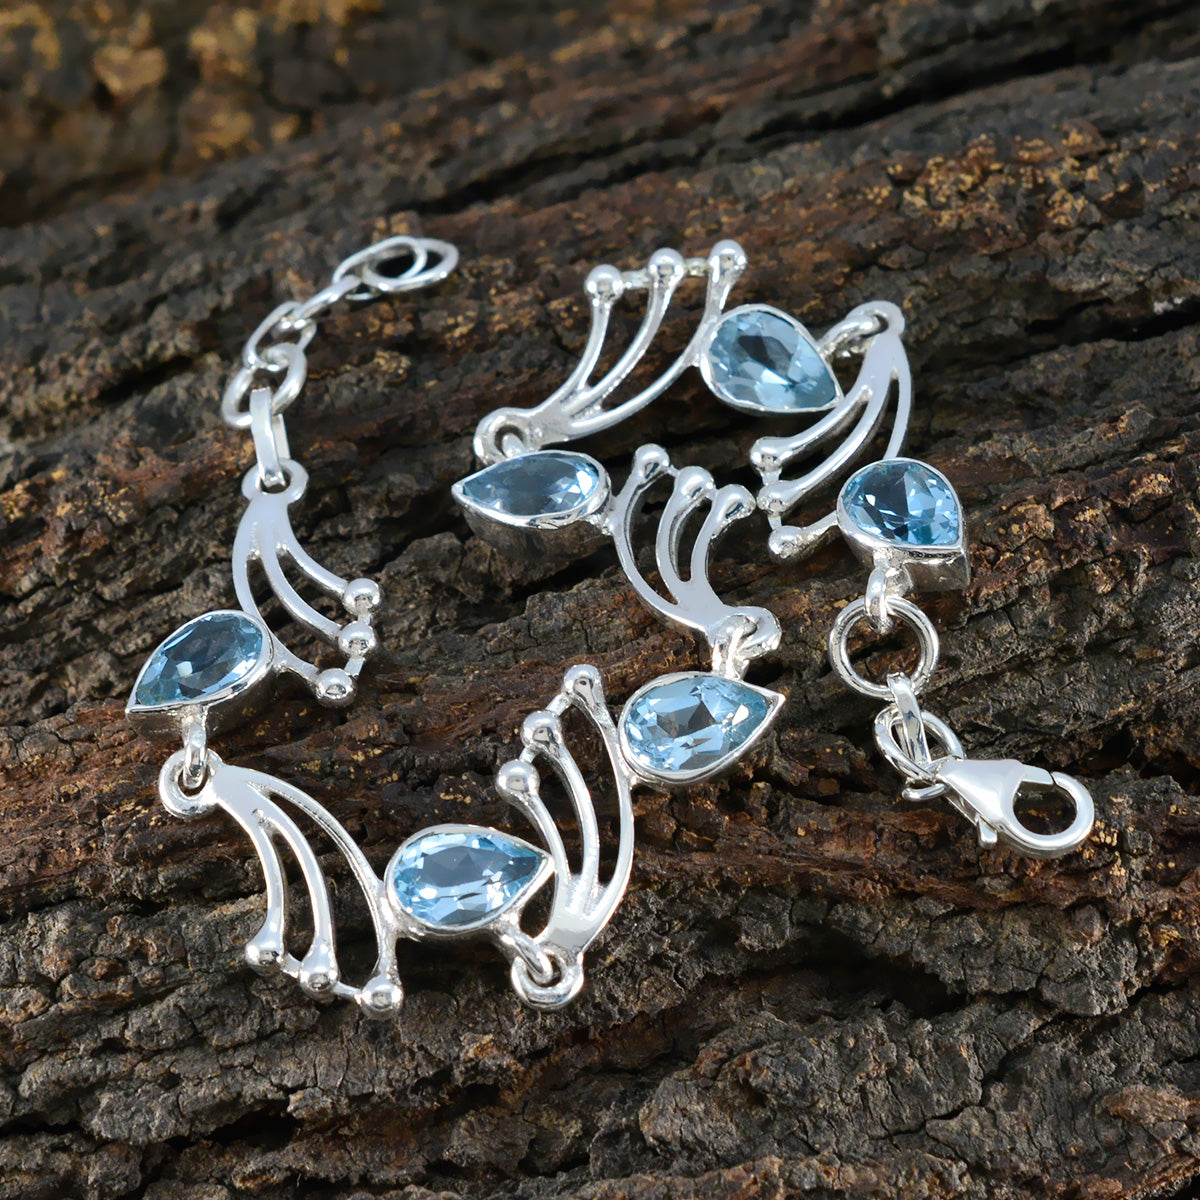 riyo attrayant bracelet en argent sterling 925 pour femme bracelet topaze bleue bracelet serti de griffes avec bracelet à maillons hameçon l taille 6-8,5 pouces.